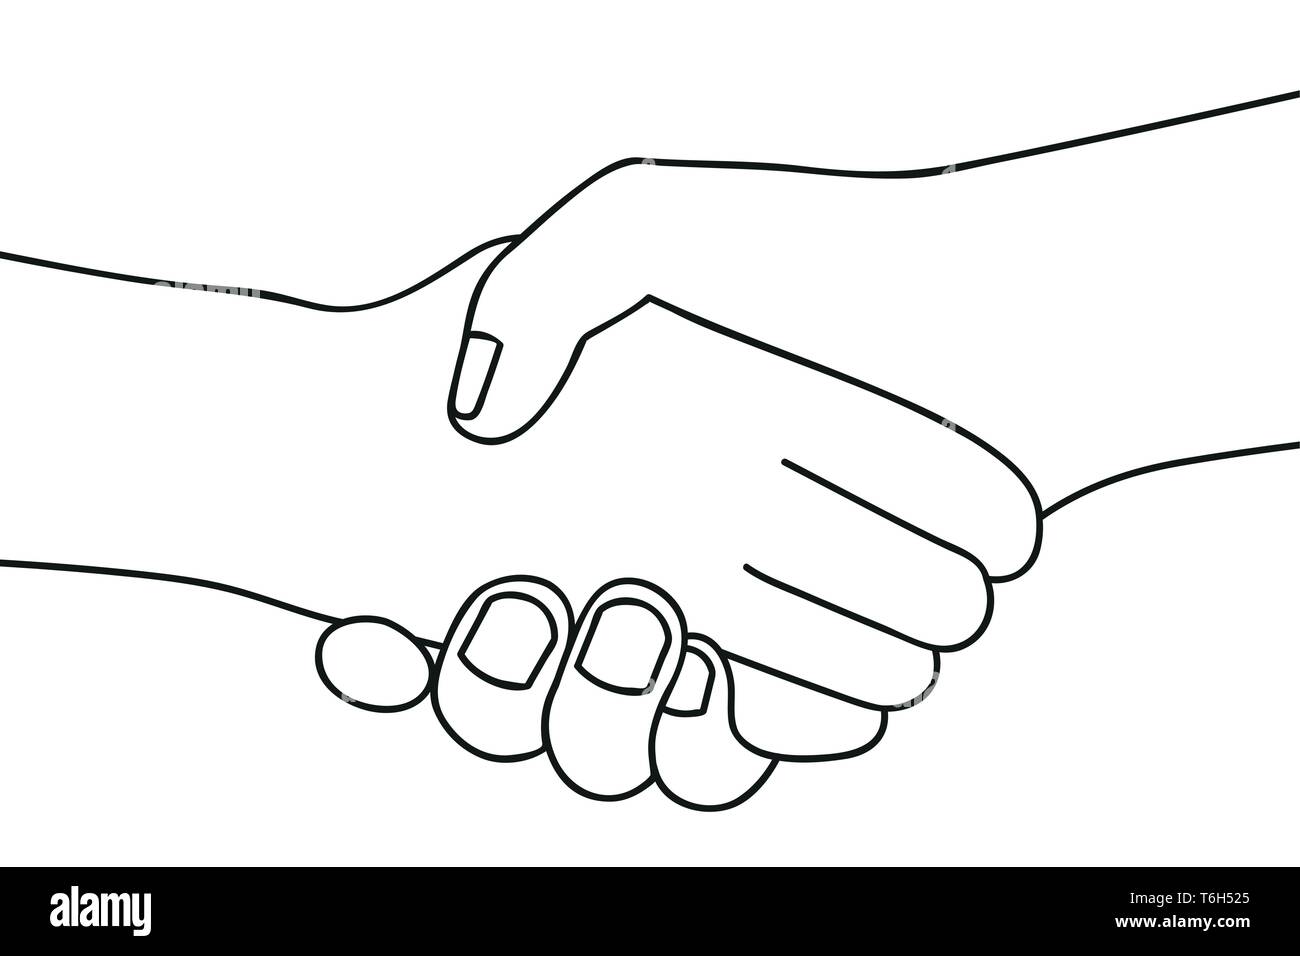 Poignée de deux personnes se serrent la main silhouette sur fond blanc vector illustration EPS10 Illustration de Vecteur